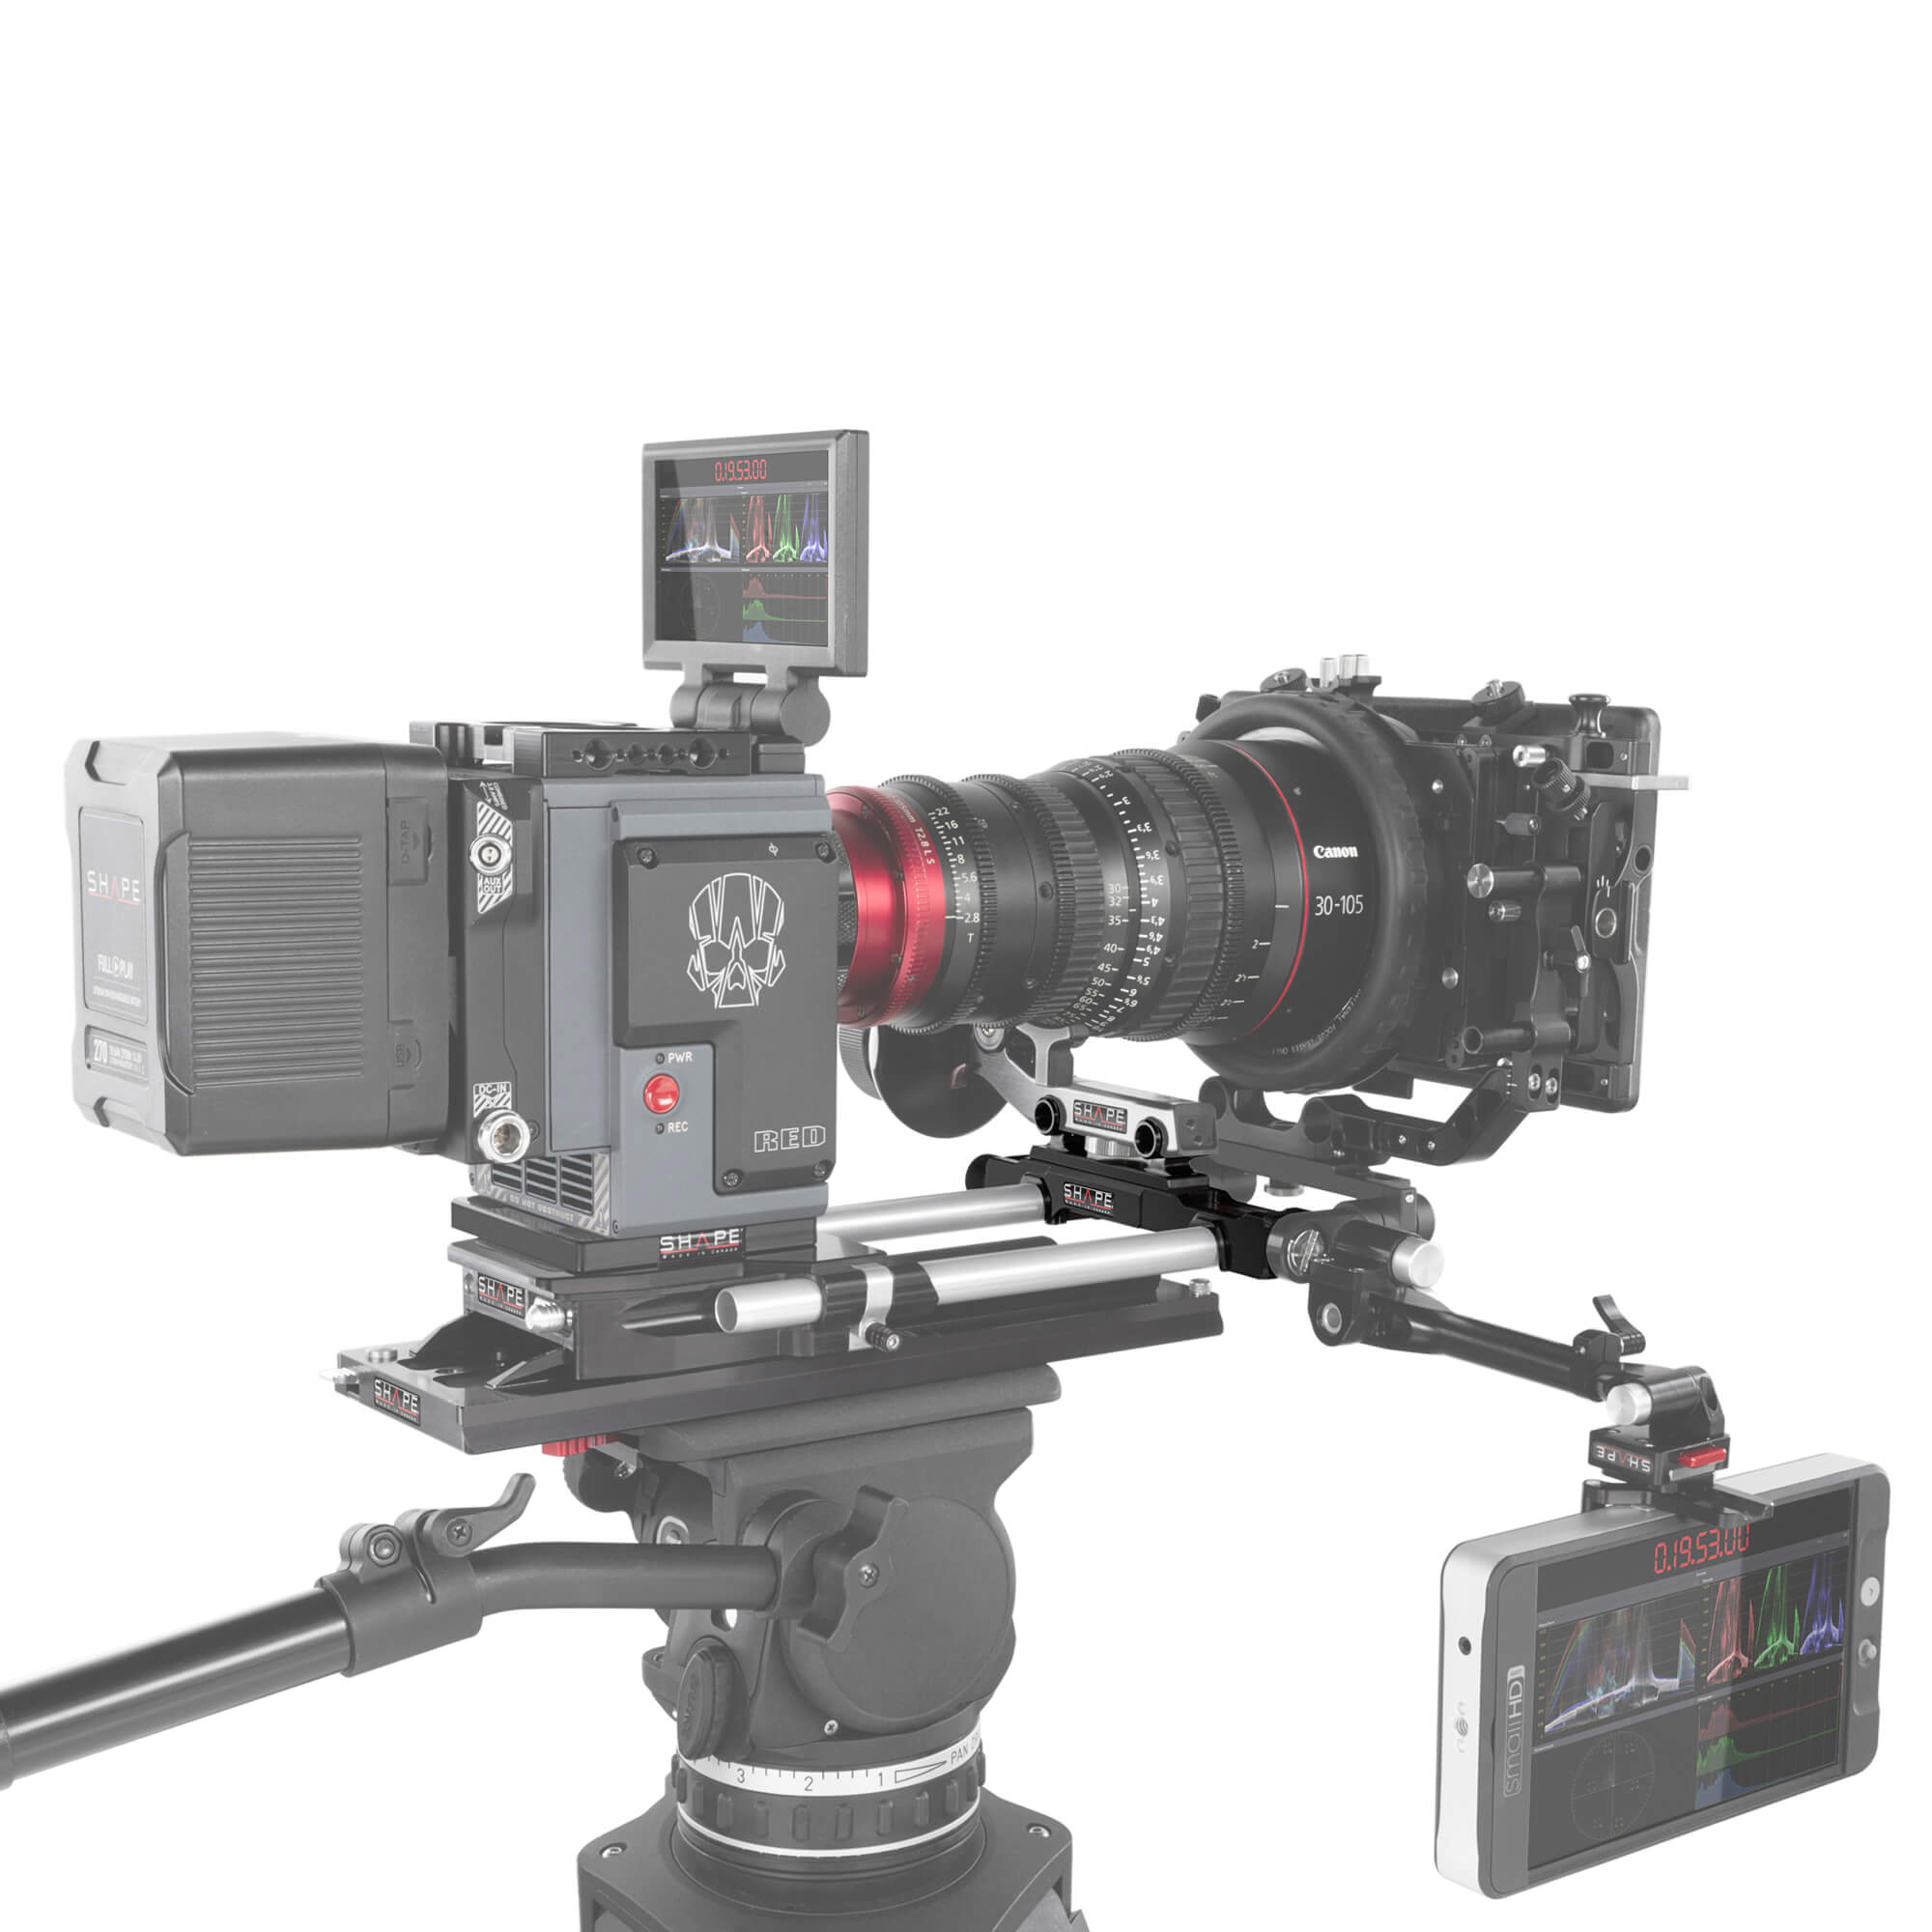 Adaptateur Snap-On SHAPE pour tiges LW de 15 mm vers tiges Studio de 15 mm